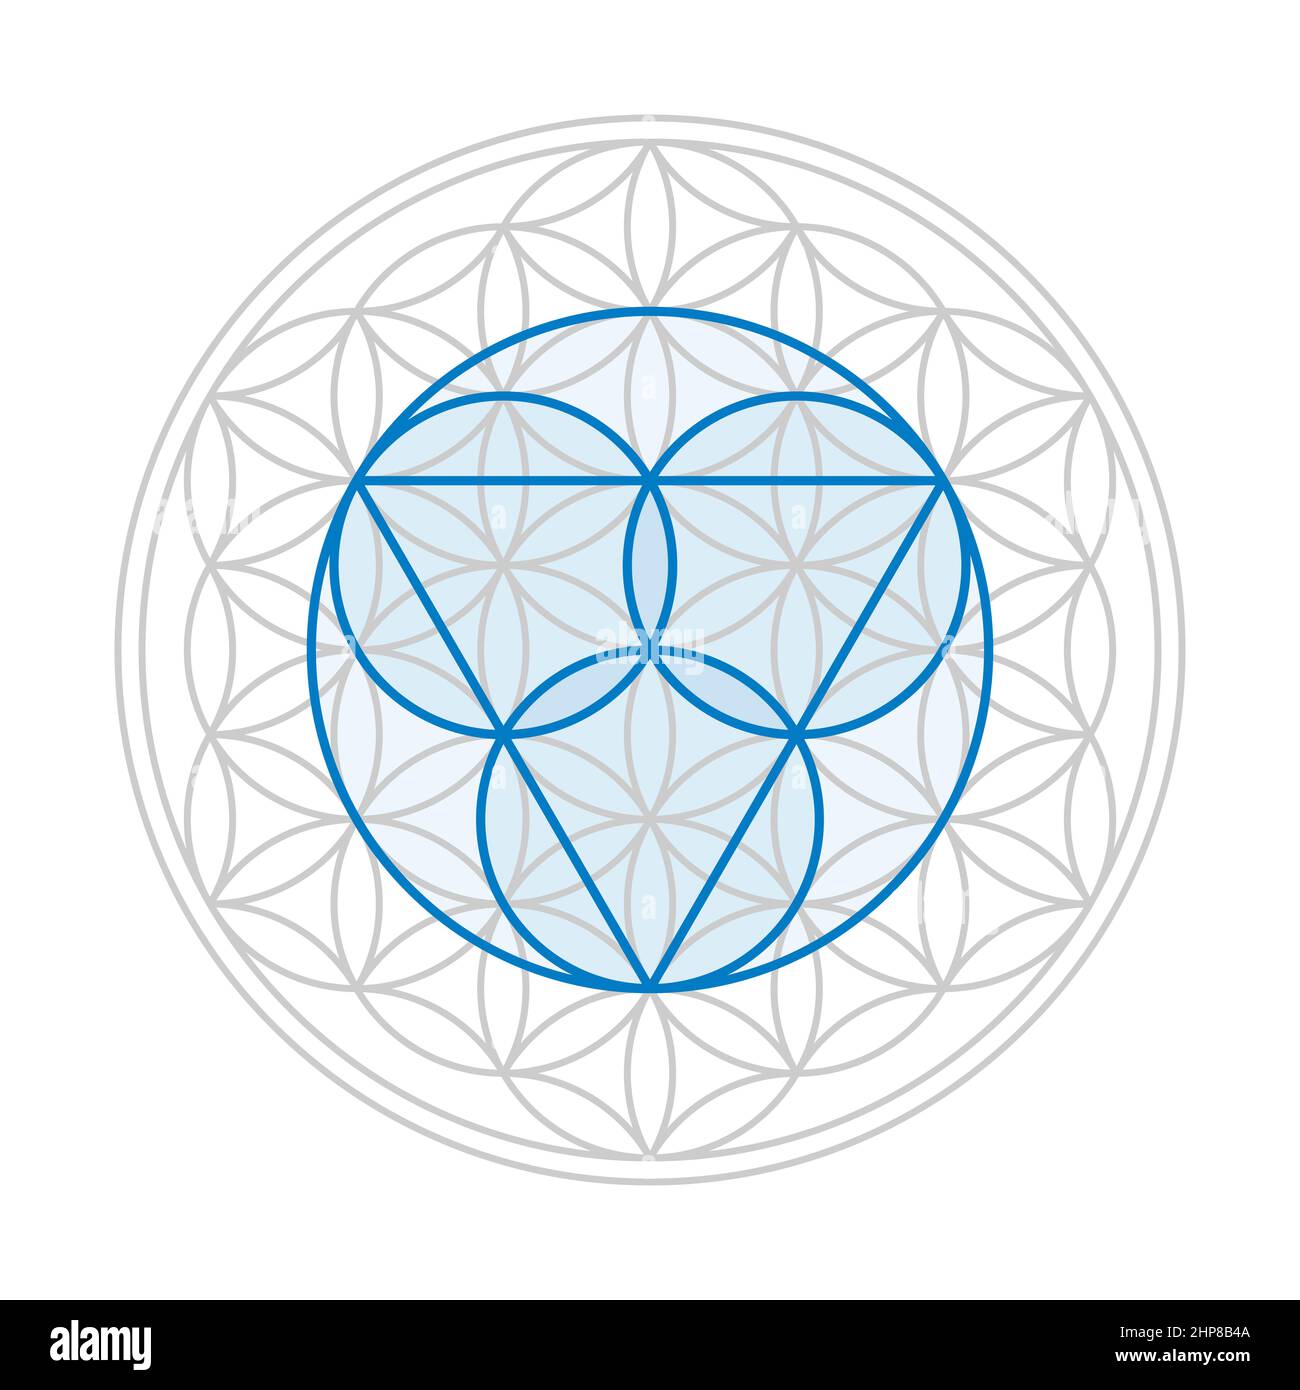 Symbole de la trinité bleue, trois cercles pour le Père, le fils Jésus-Christ, et le Saint-Esprit, sur une fleur grise de la vie, figure géométrique. Banque D'Images